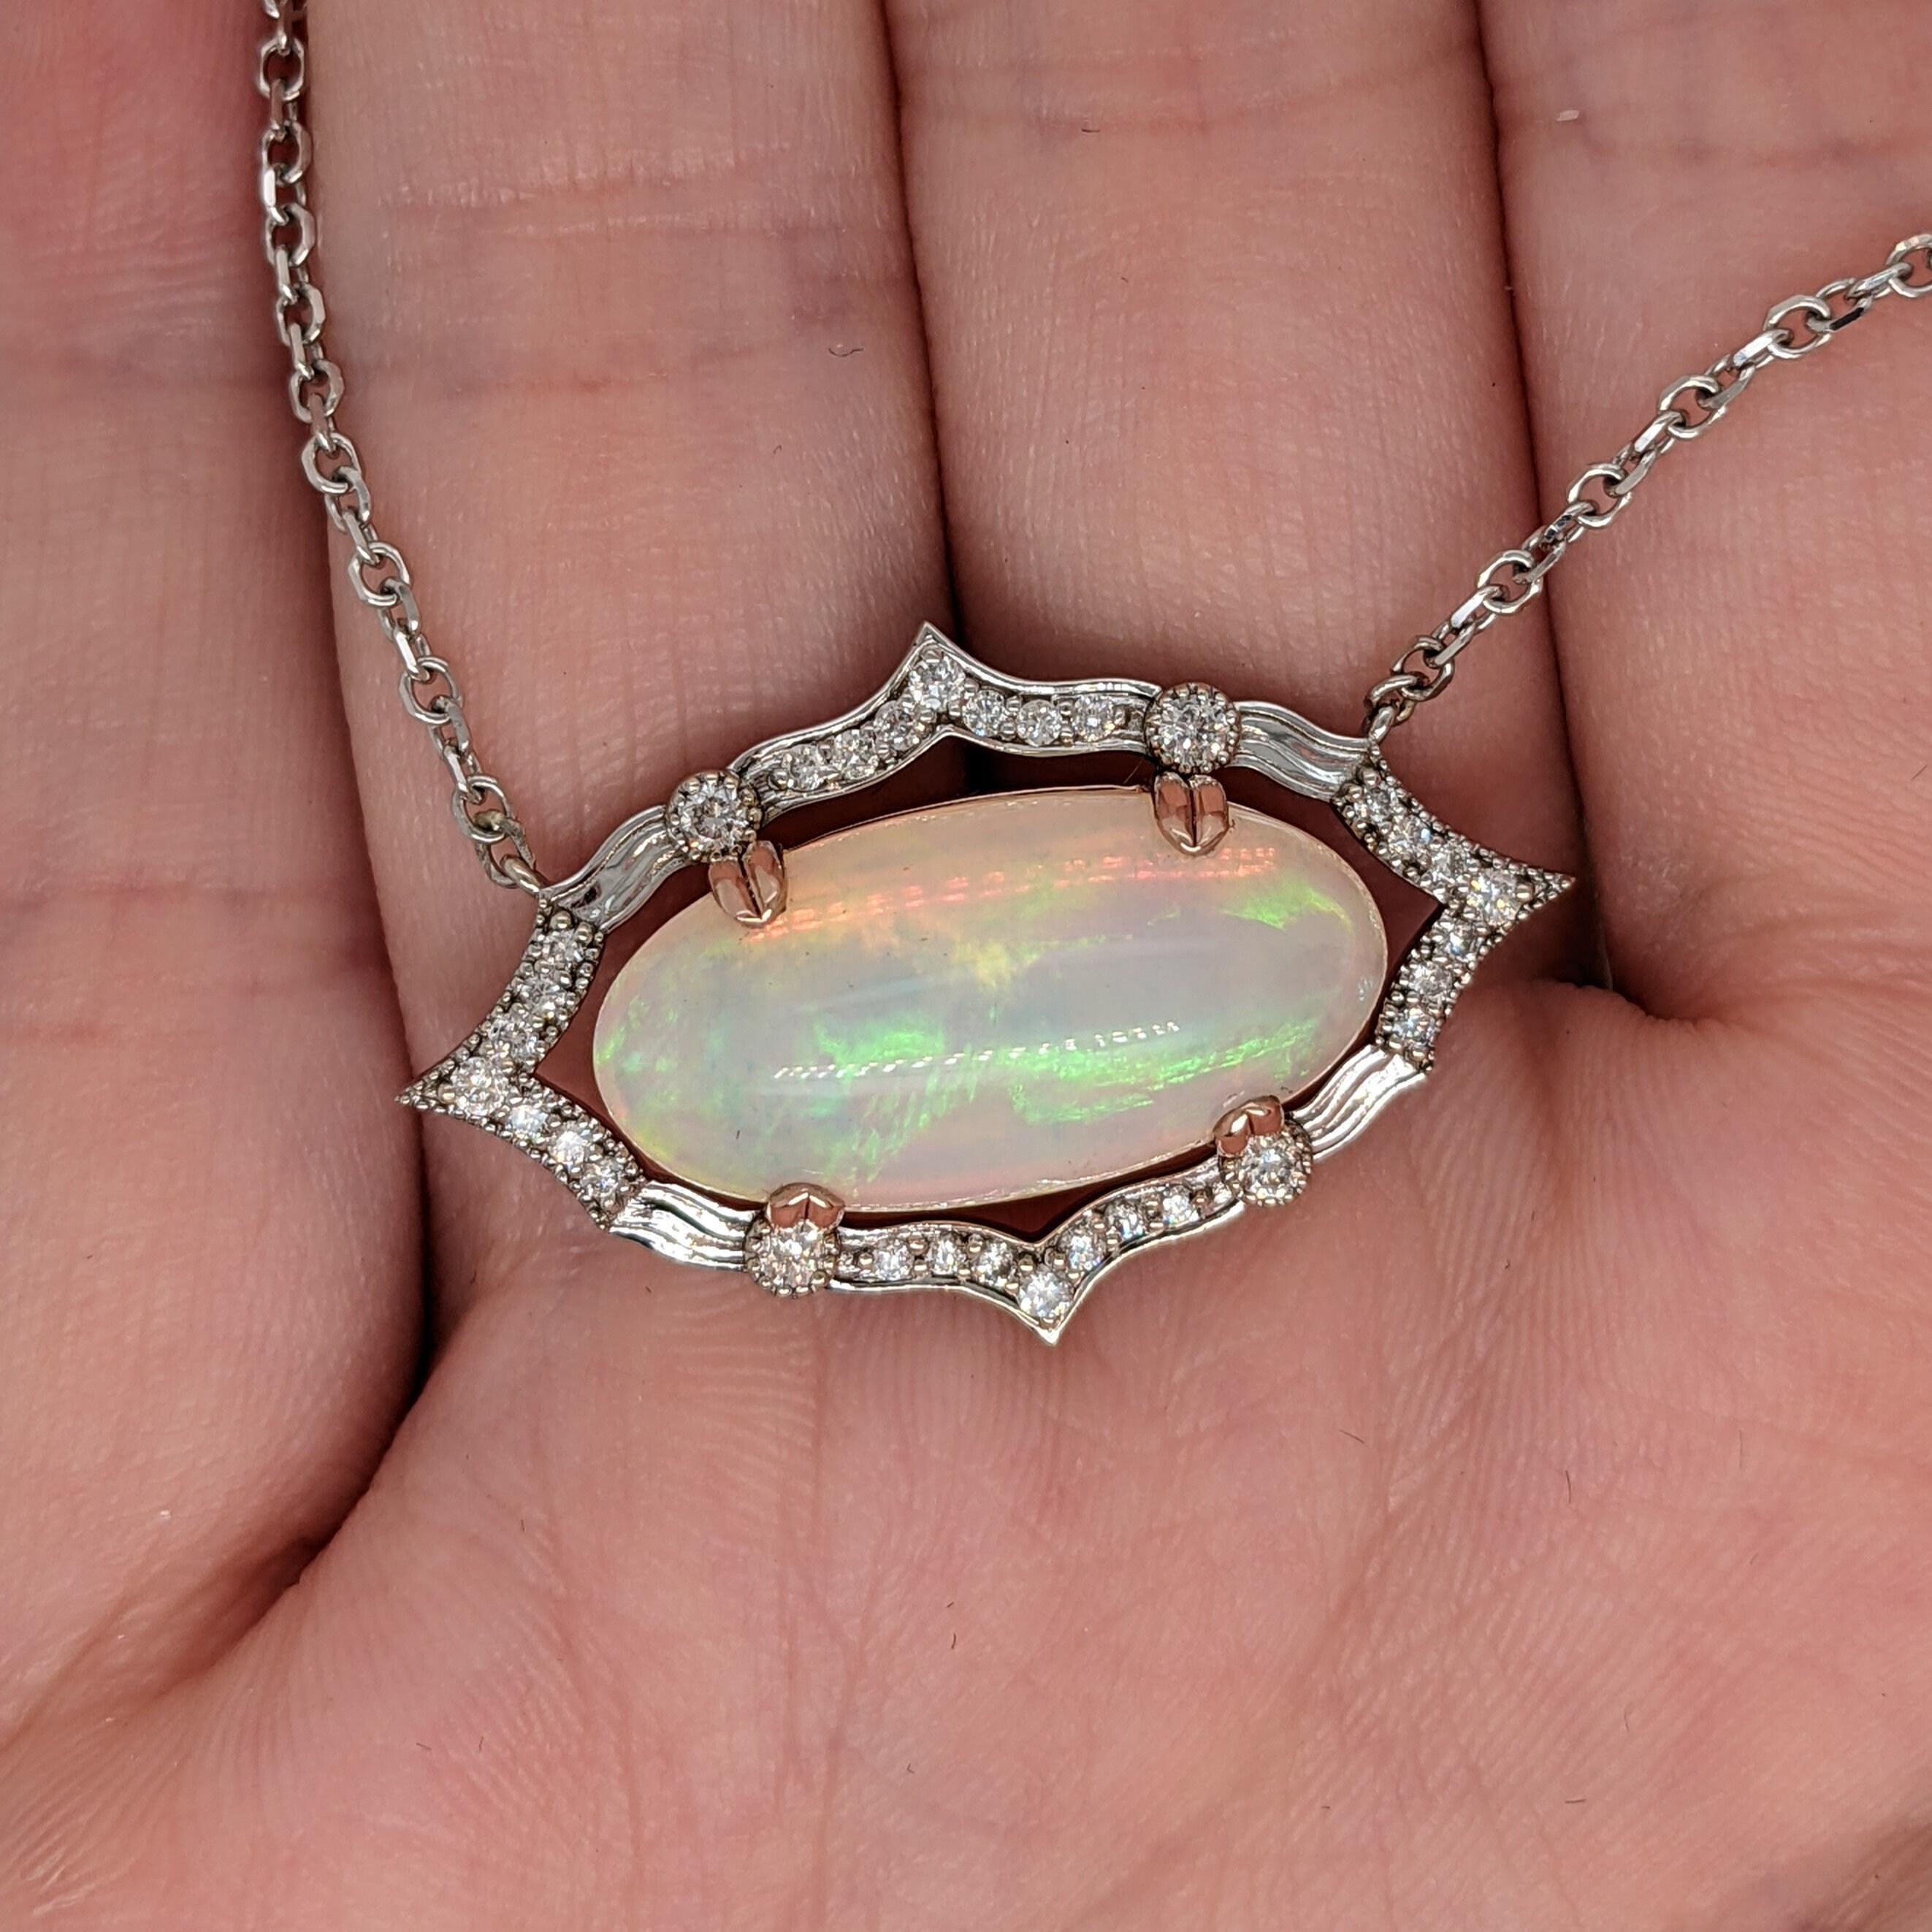 Cette magnifique opale éthiopienne de grande taille brille dans ce pendentif unique de style vintage en or rose et blanc 14k avec deux tailles de diamants ronds en accents.

Parfait pour les cadeaux, les anniversaires ou toute autre occasion